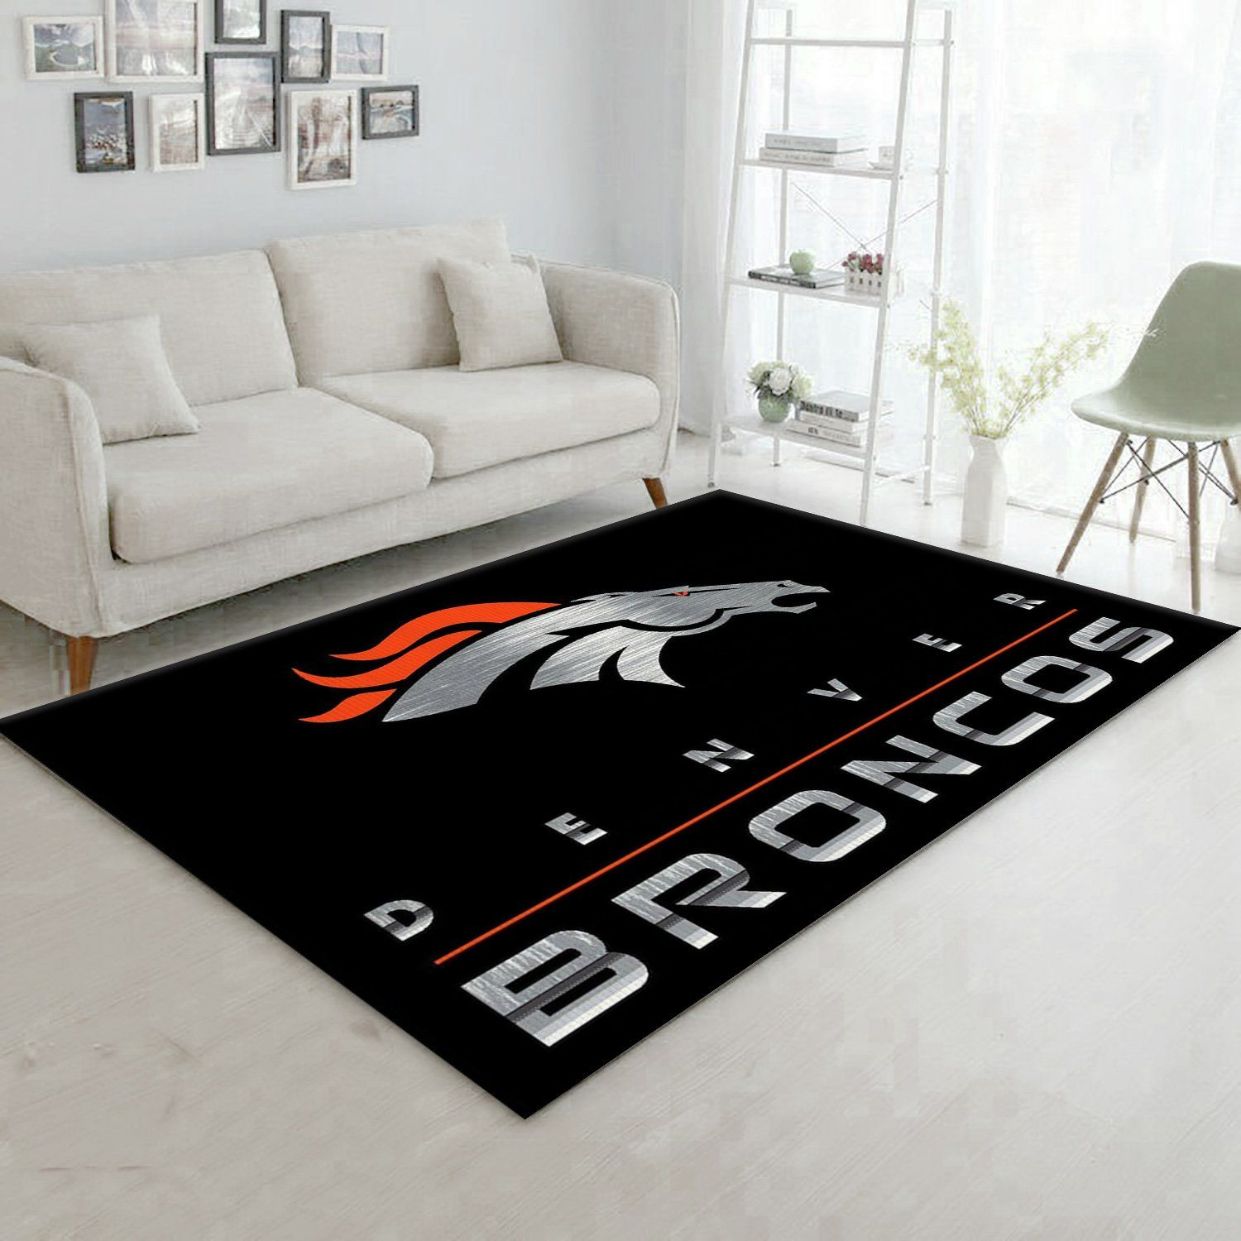 Denver Broncos Imperial Chrome Rug NFL Area Rug Carpet, Bedroom, Floor Decor Home Decor